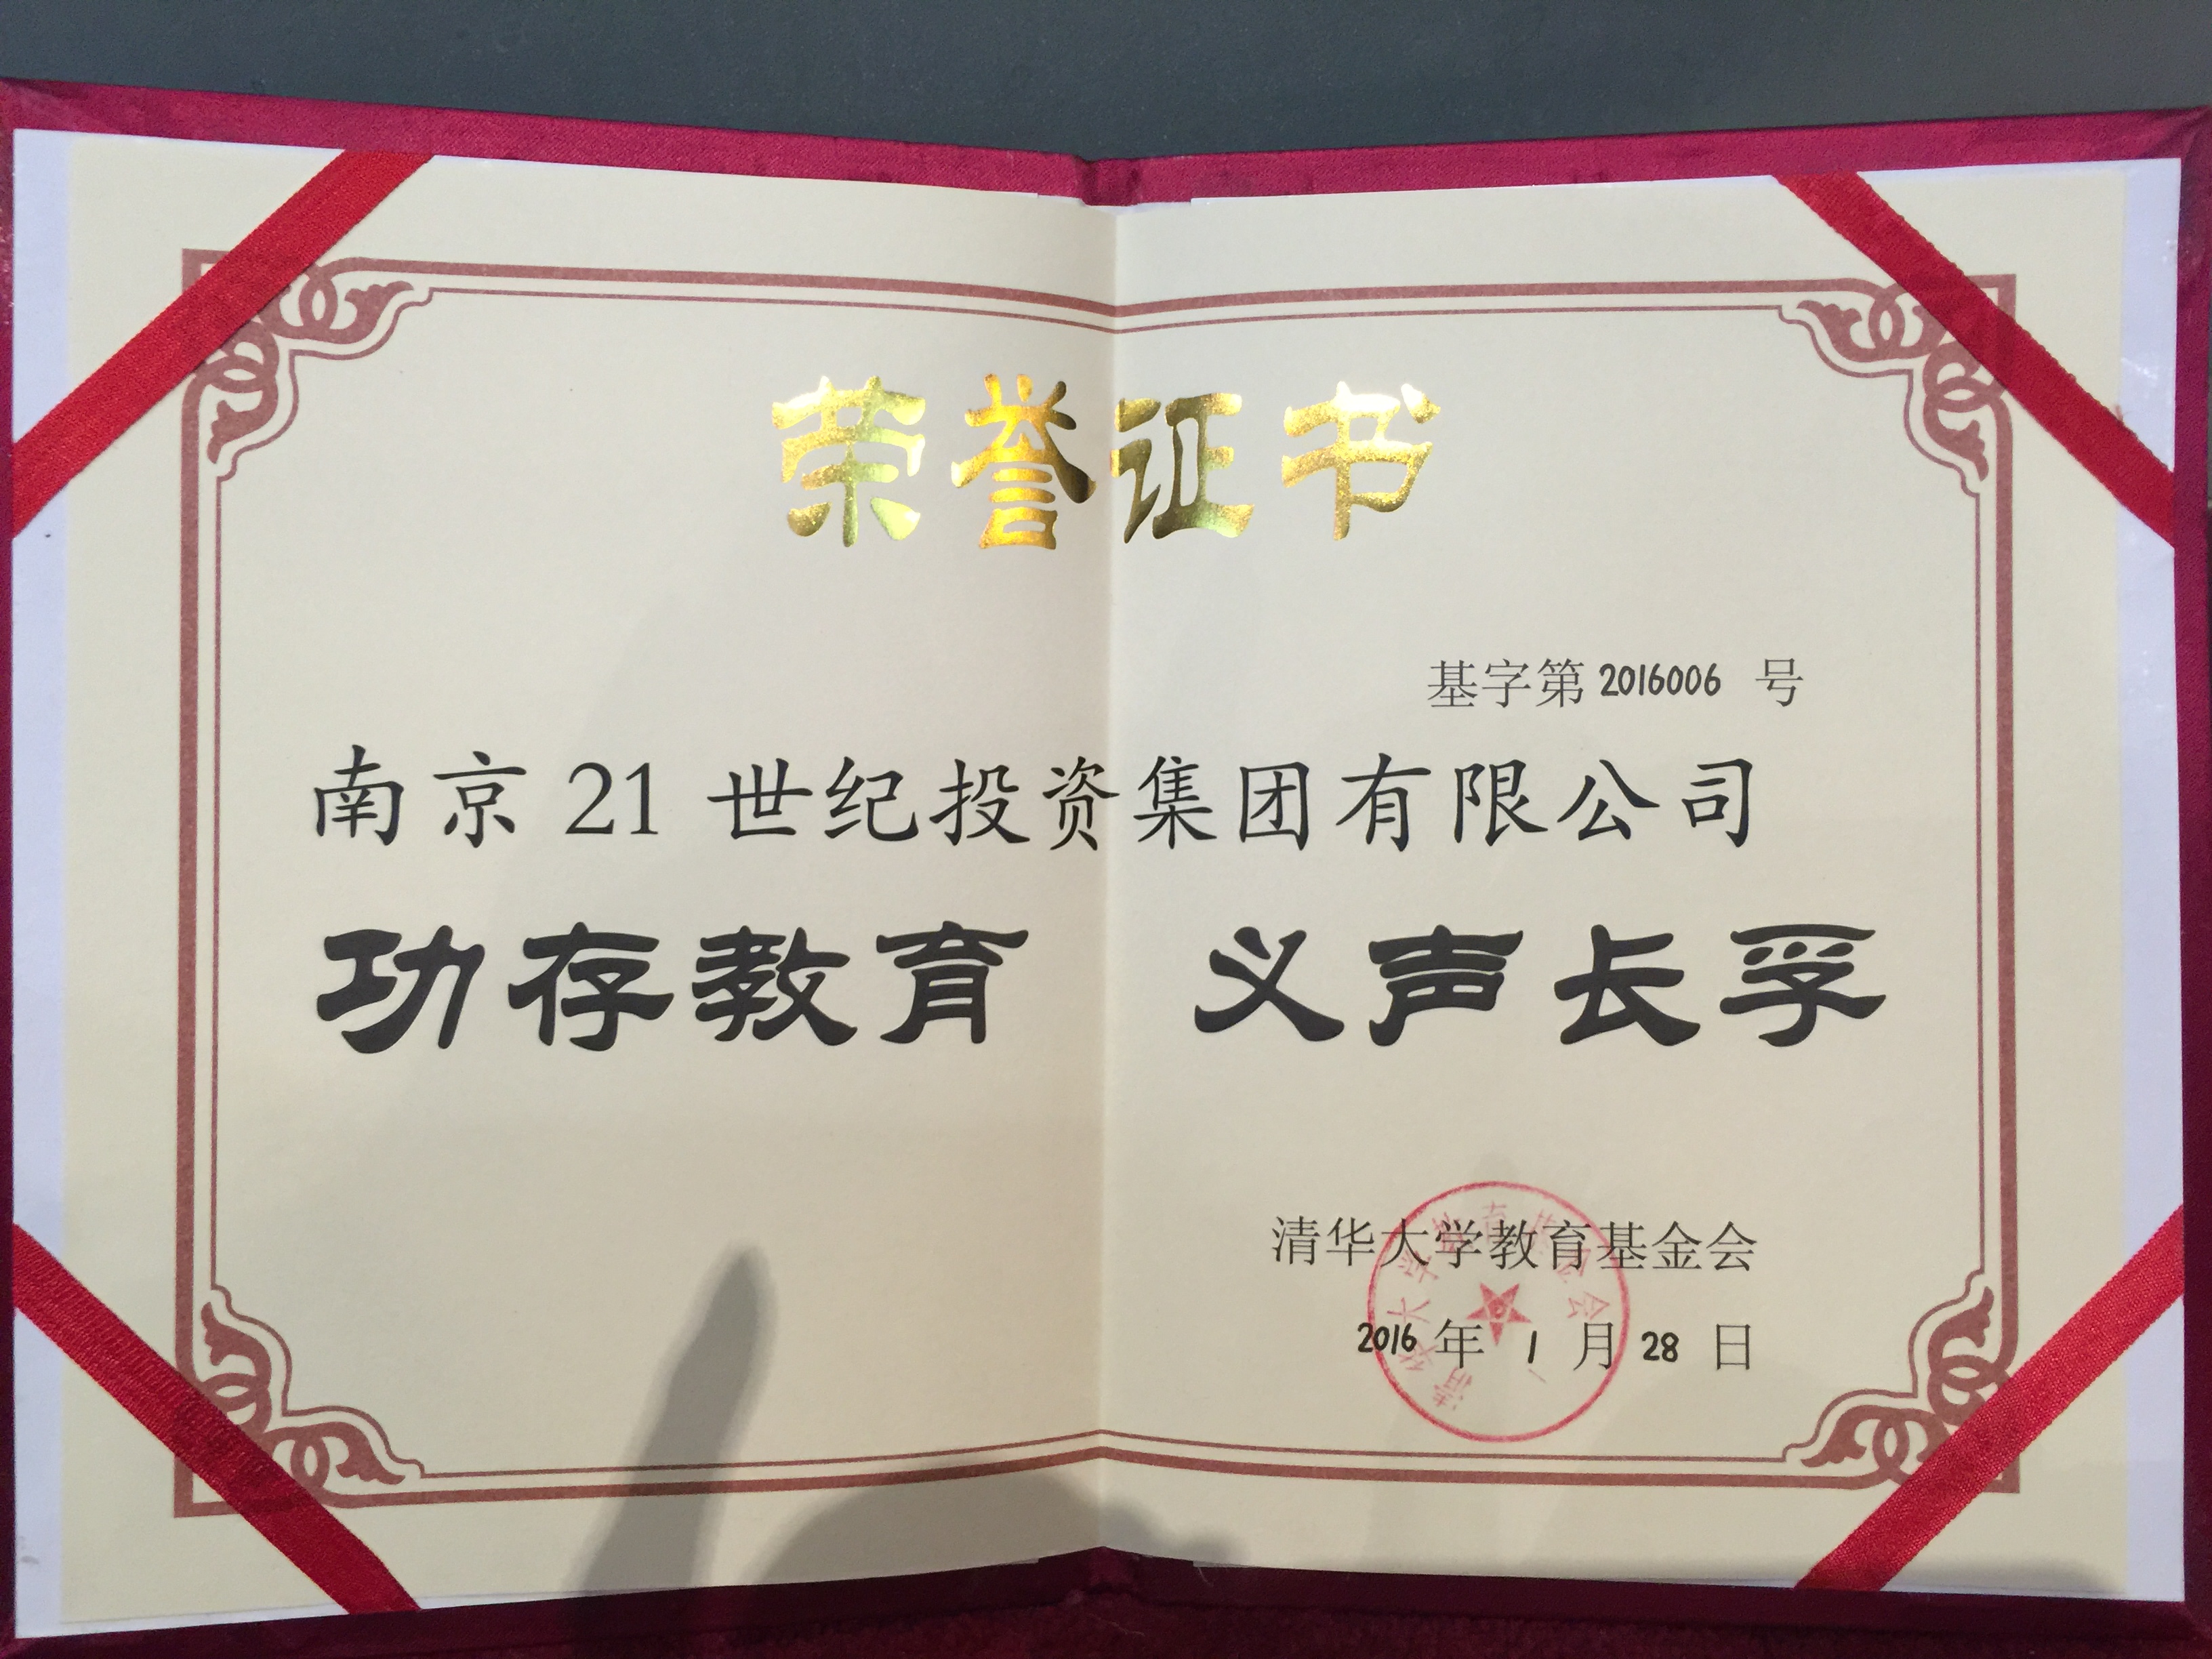 清华大学教育基金捐赠荣誉证书